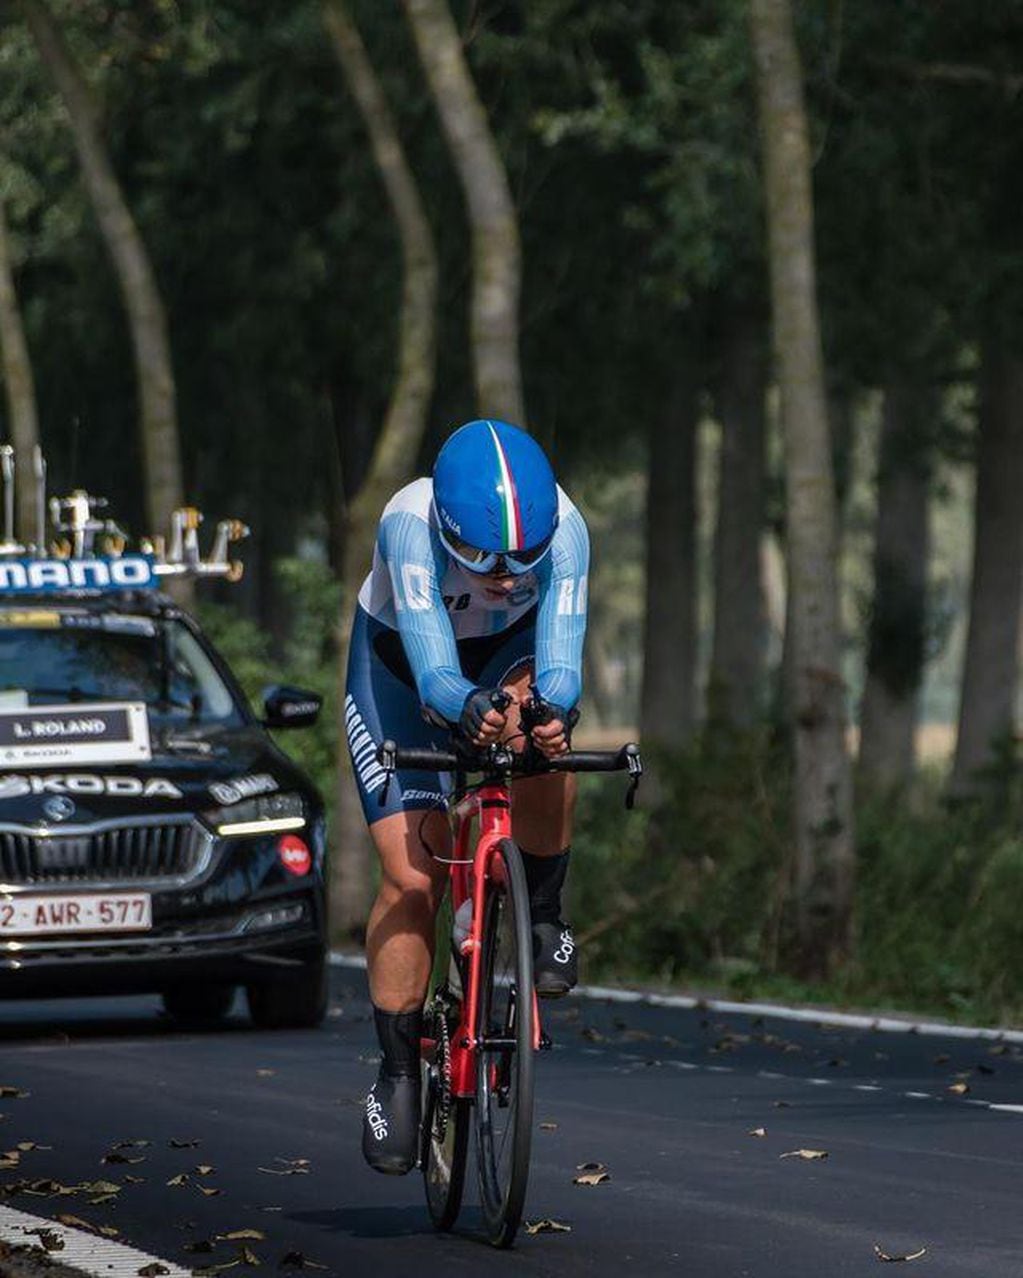 La mendocina vive del ciclismo profesional y a un año de competencia UCI, logró hacer podio.